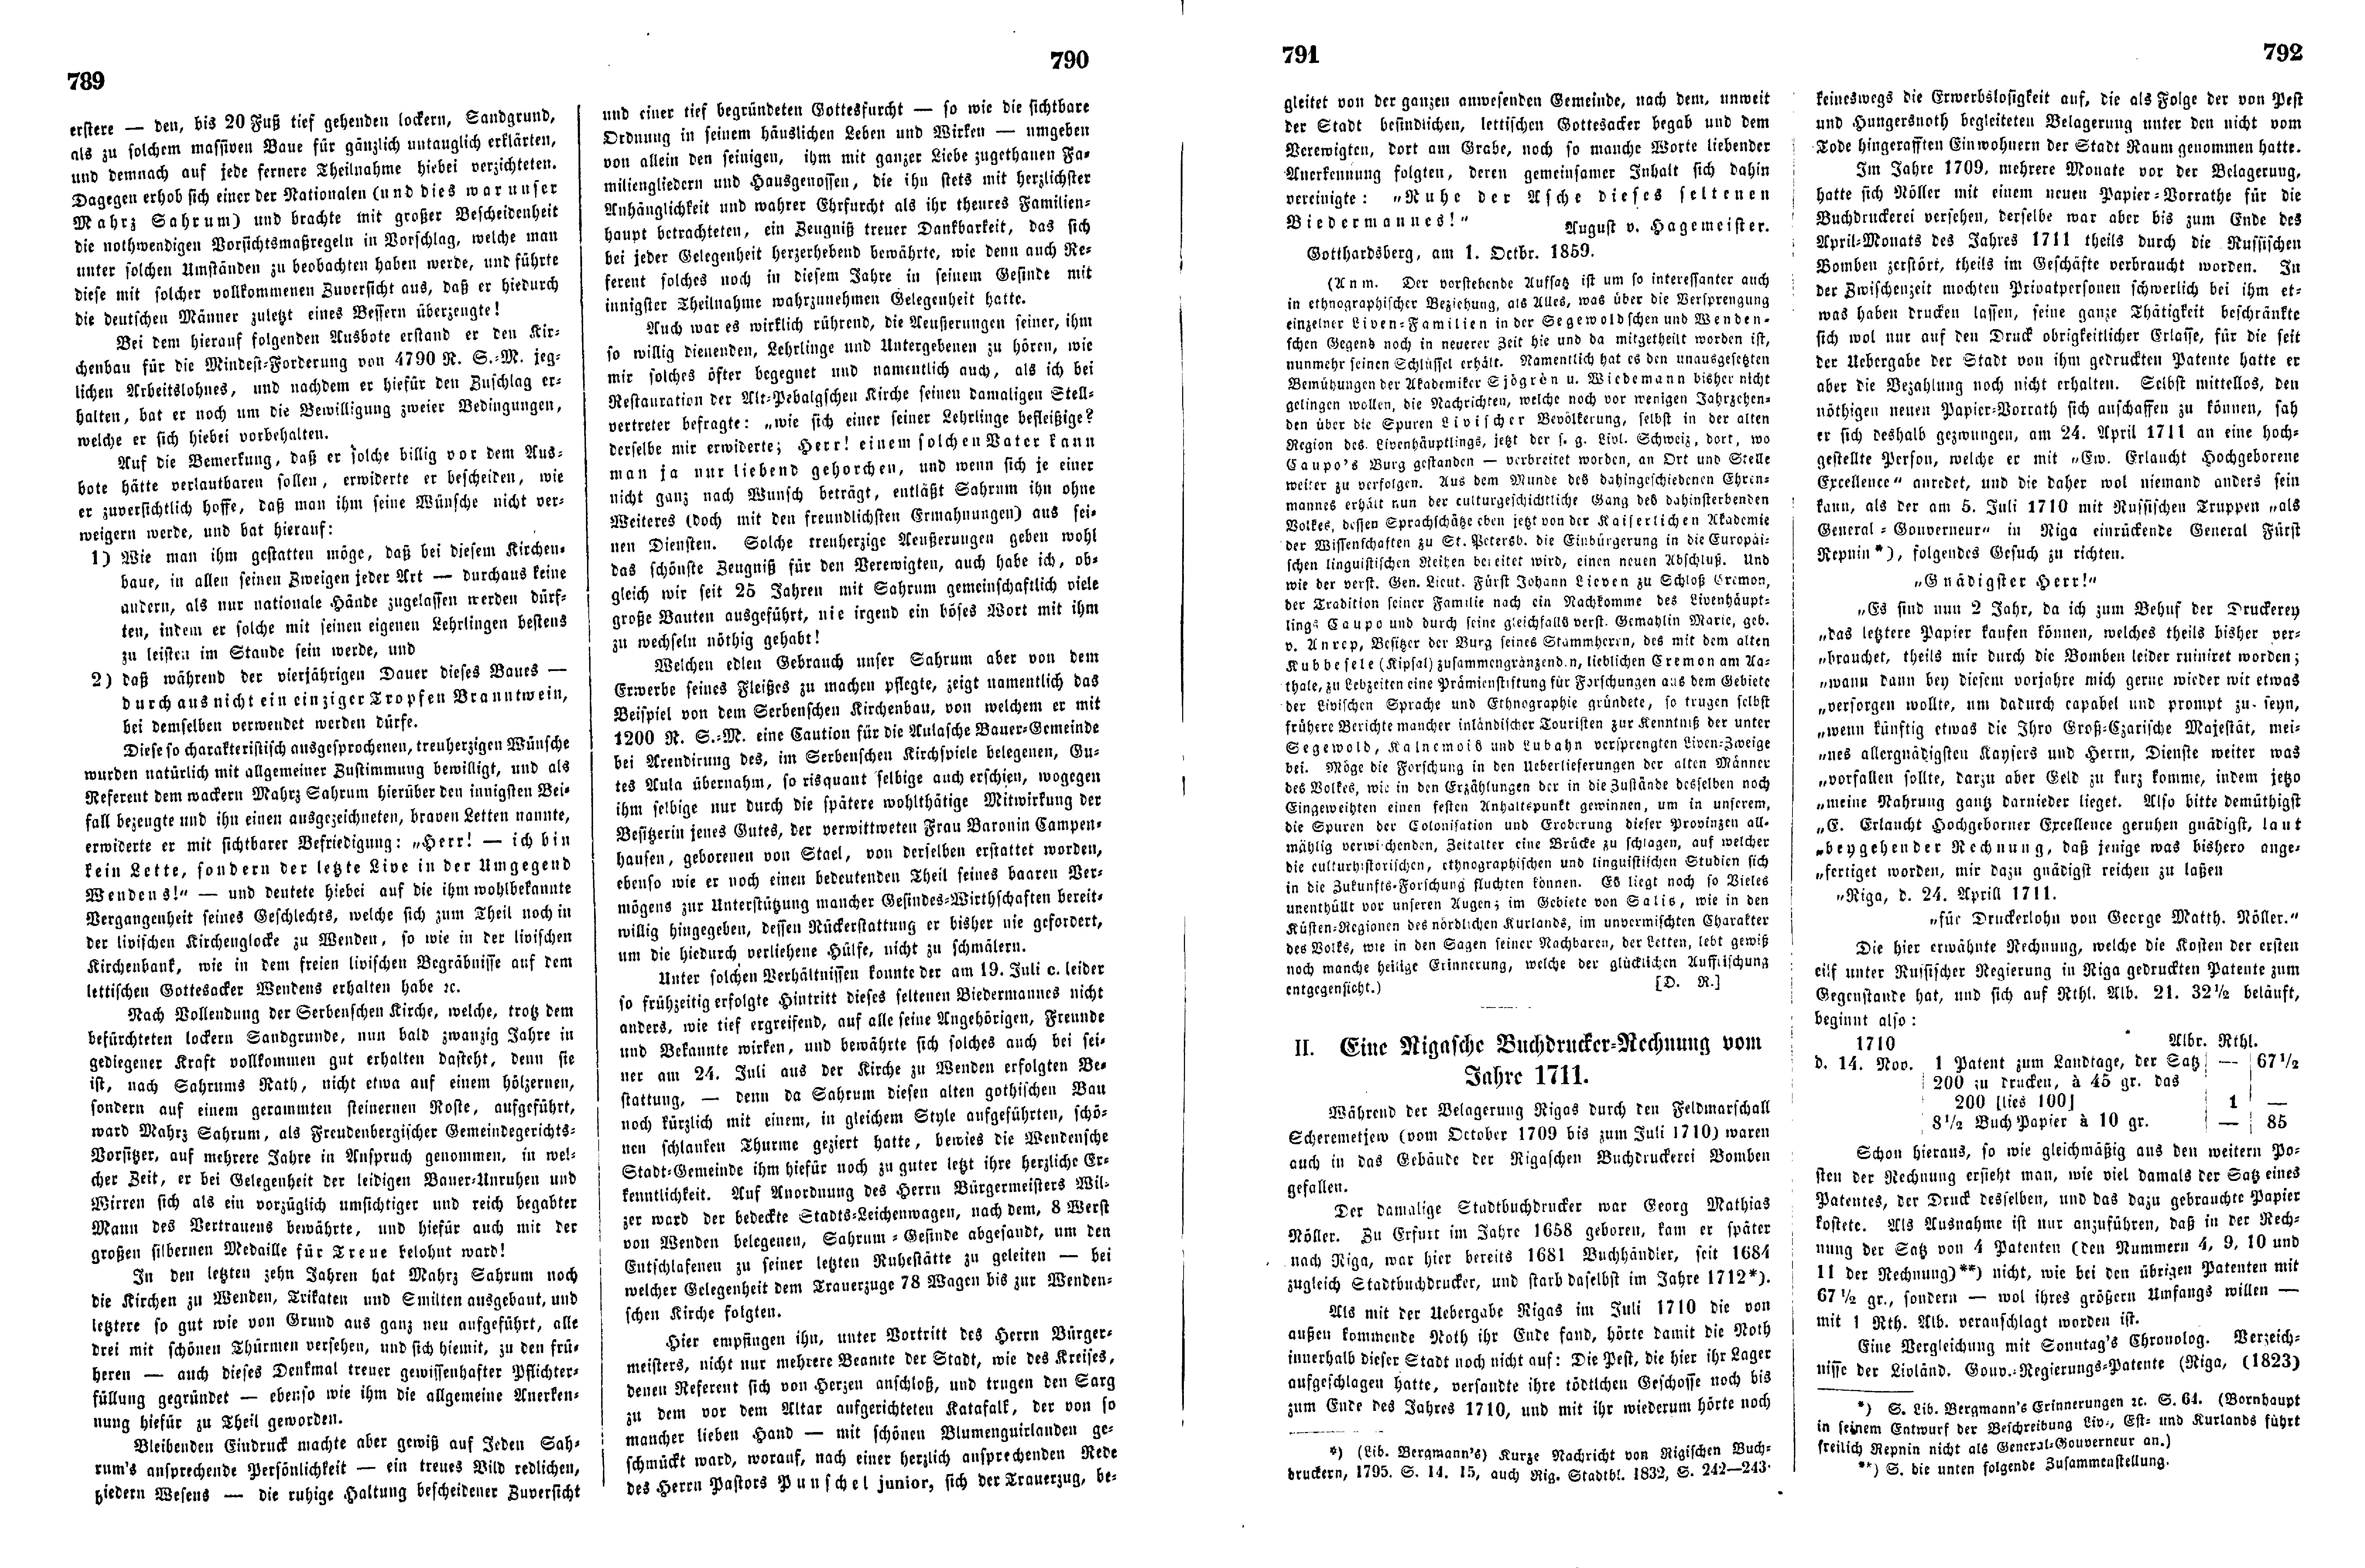 Mahrs Sahrum, der letzte Live in der Umgegend Wenden's (1859) | 2. (789-792) Main body of text